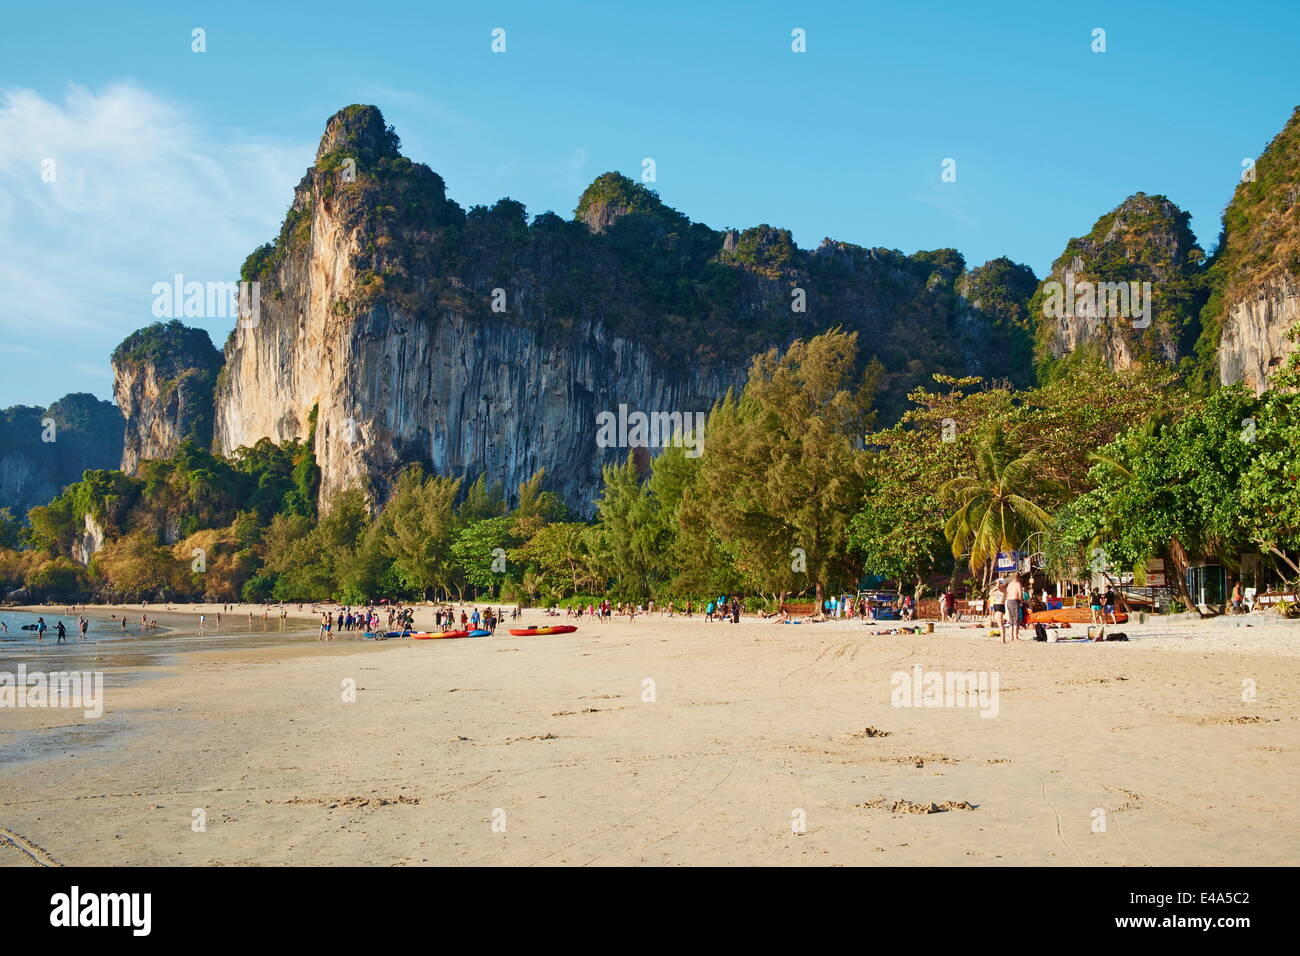 La baie de Ao Phra Nang Railay Beach, plage de Tonsay, province de Krabi, Thaïlande, Asie du Sud, Asie Banque D'Images